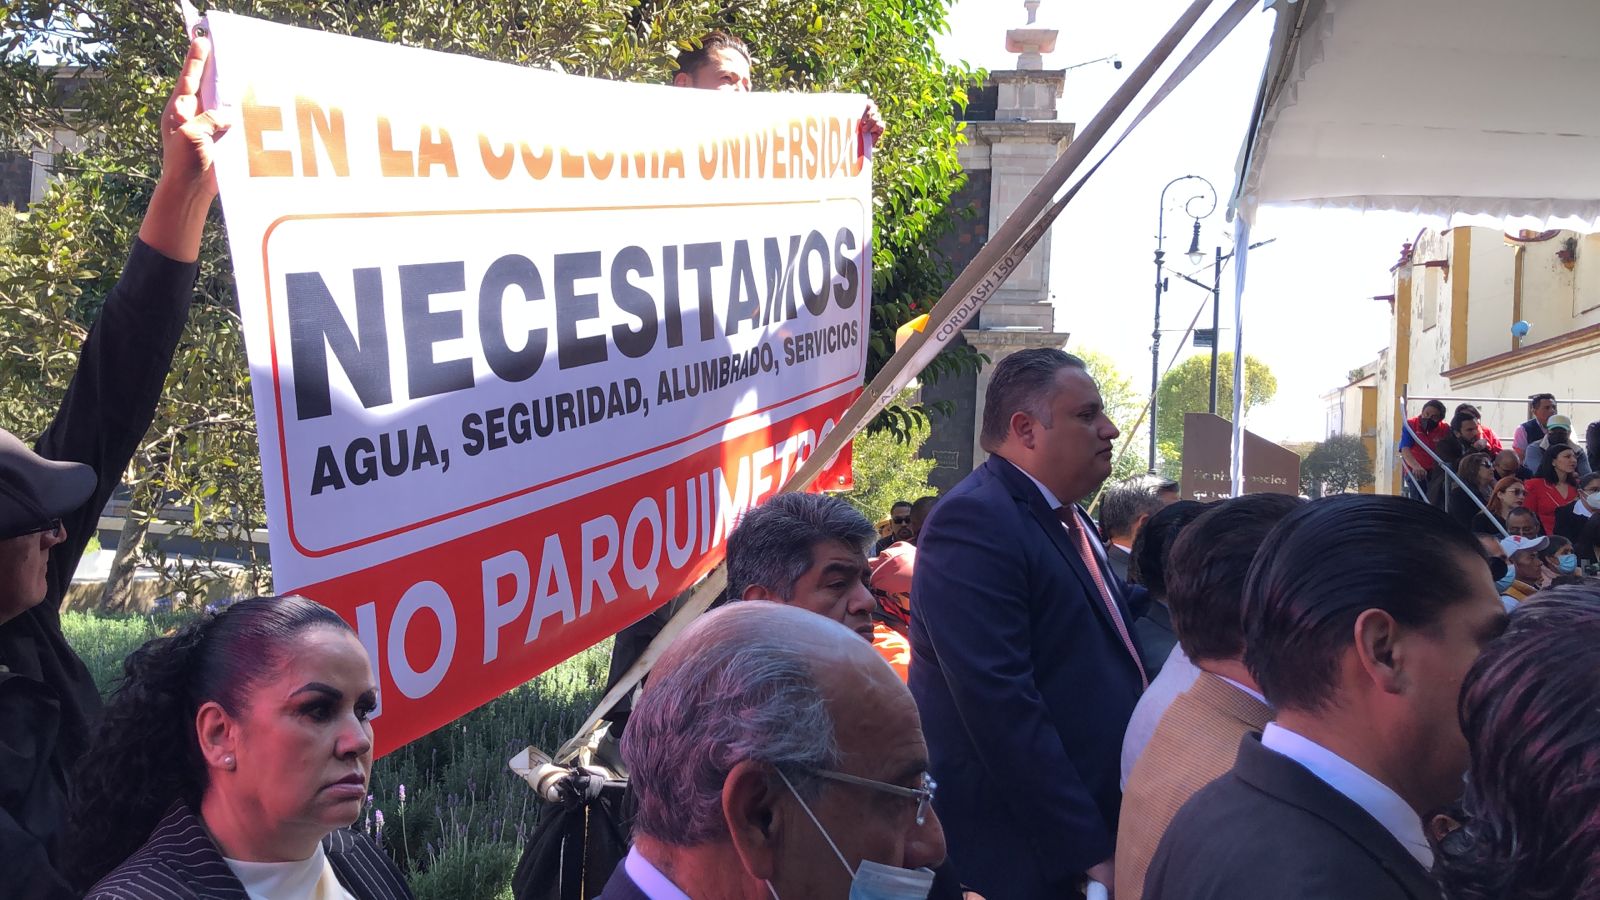 Vecinos de Universidad exigen ser escuchados en promulgación de Bandó Municipal